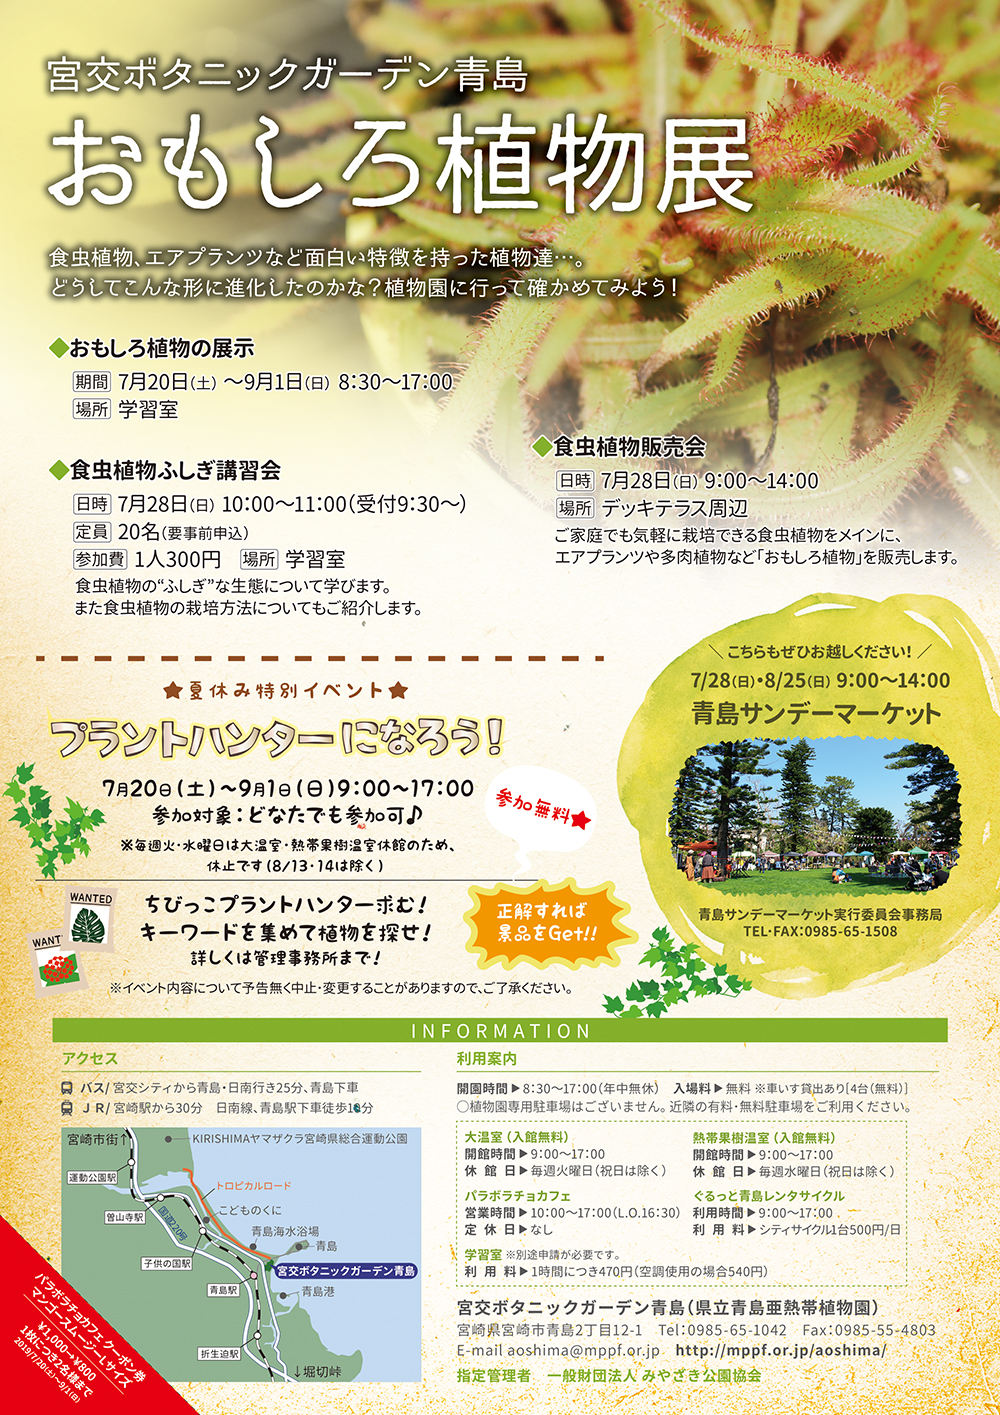 今年の夏休みは植物園へ 宮交ボタニックガーデン青島 Miyakoh Botanic Garden Aoshima